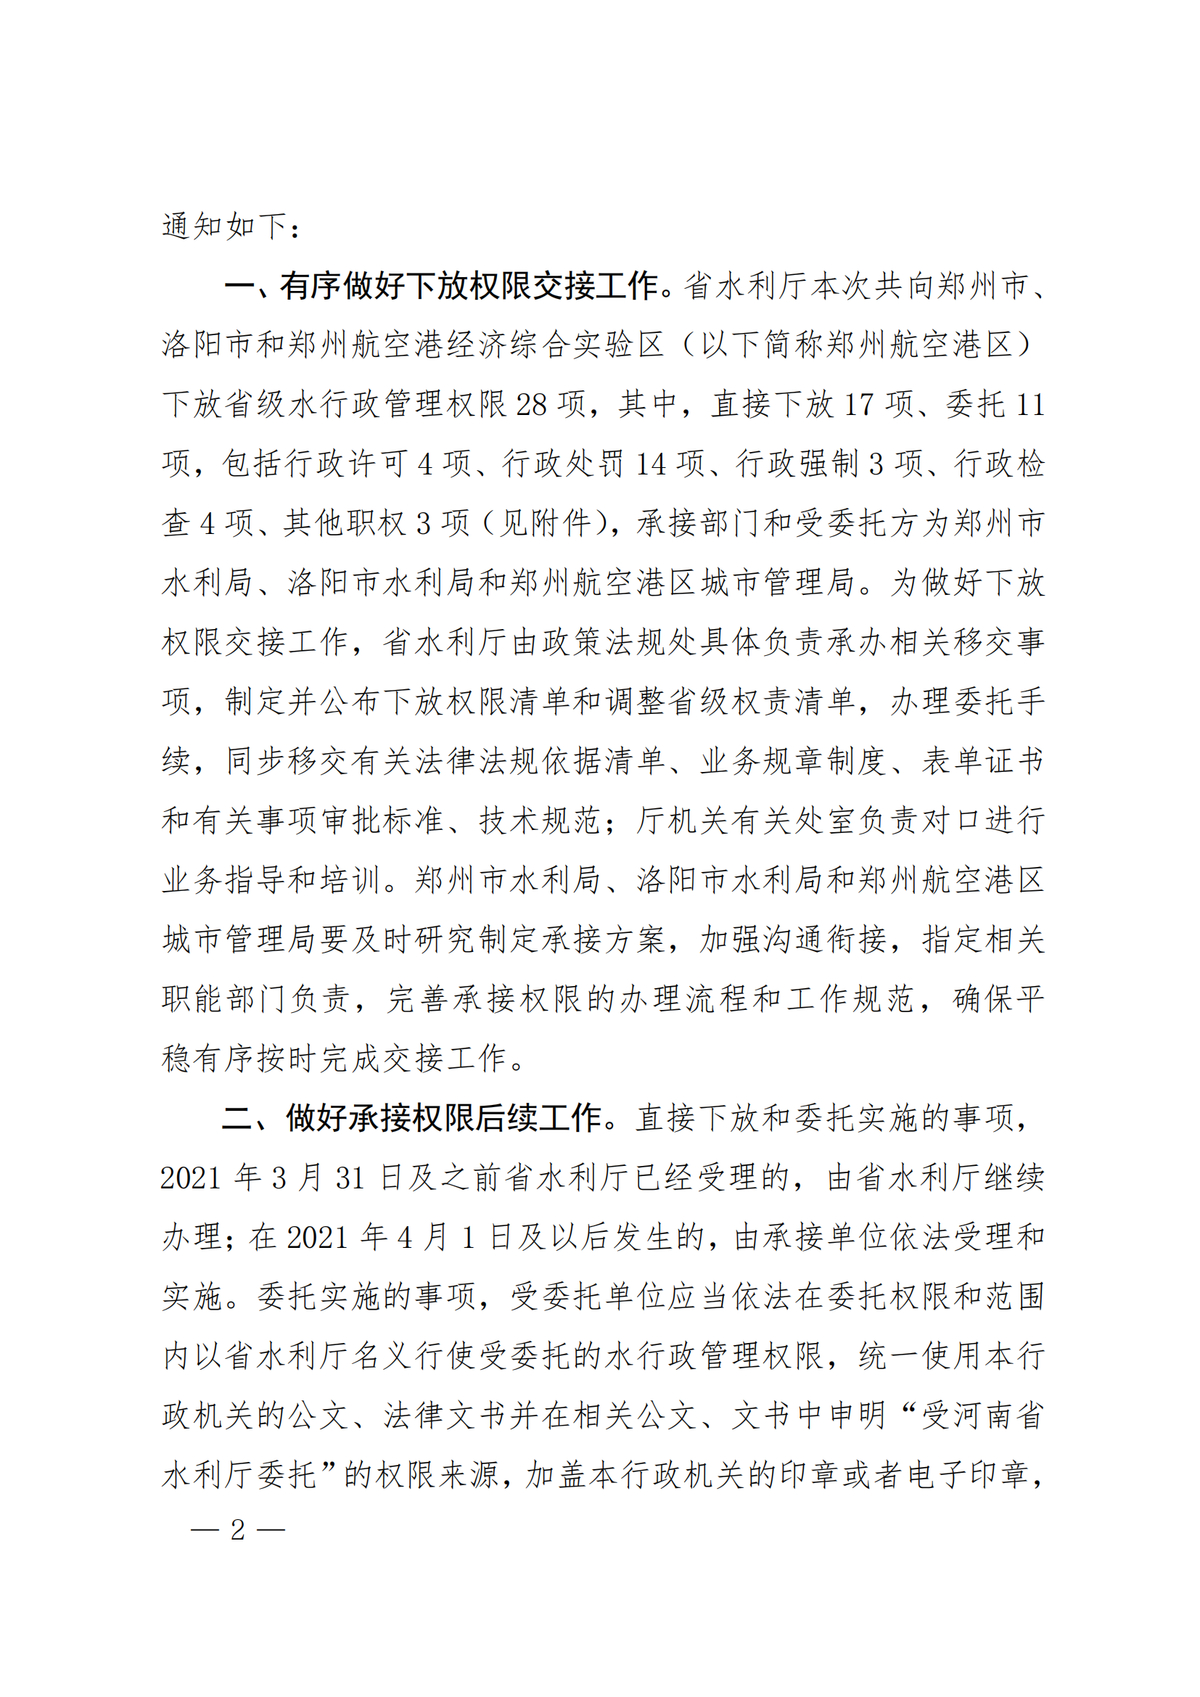 河南省水利厅关于做好向郑州市洛阳市和郑州航空港区下放部分省级水行政管理权限工作的通知